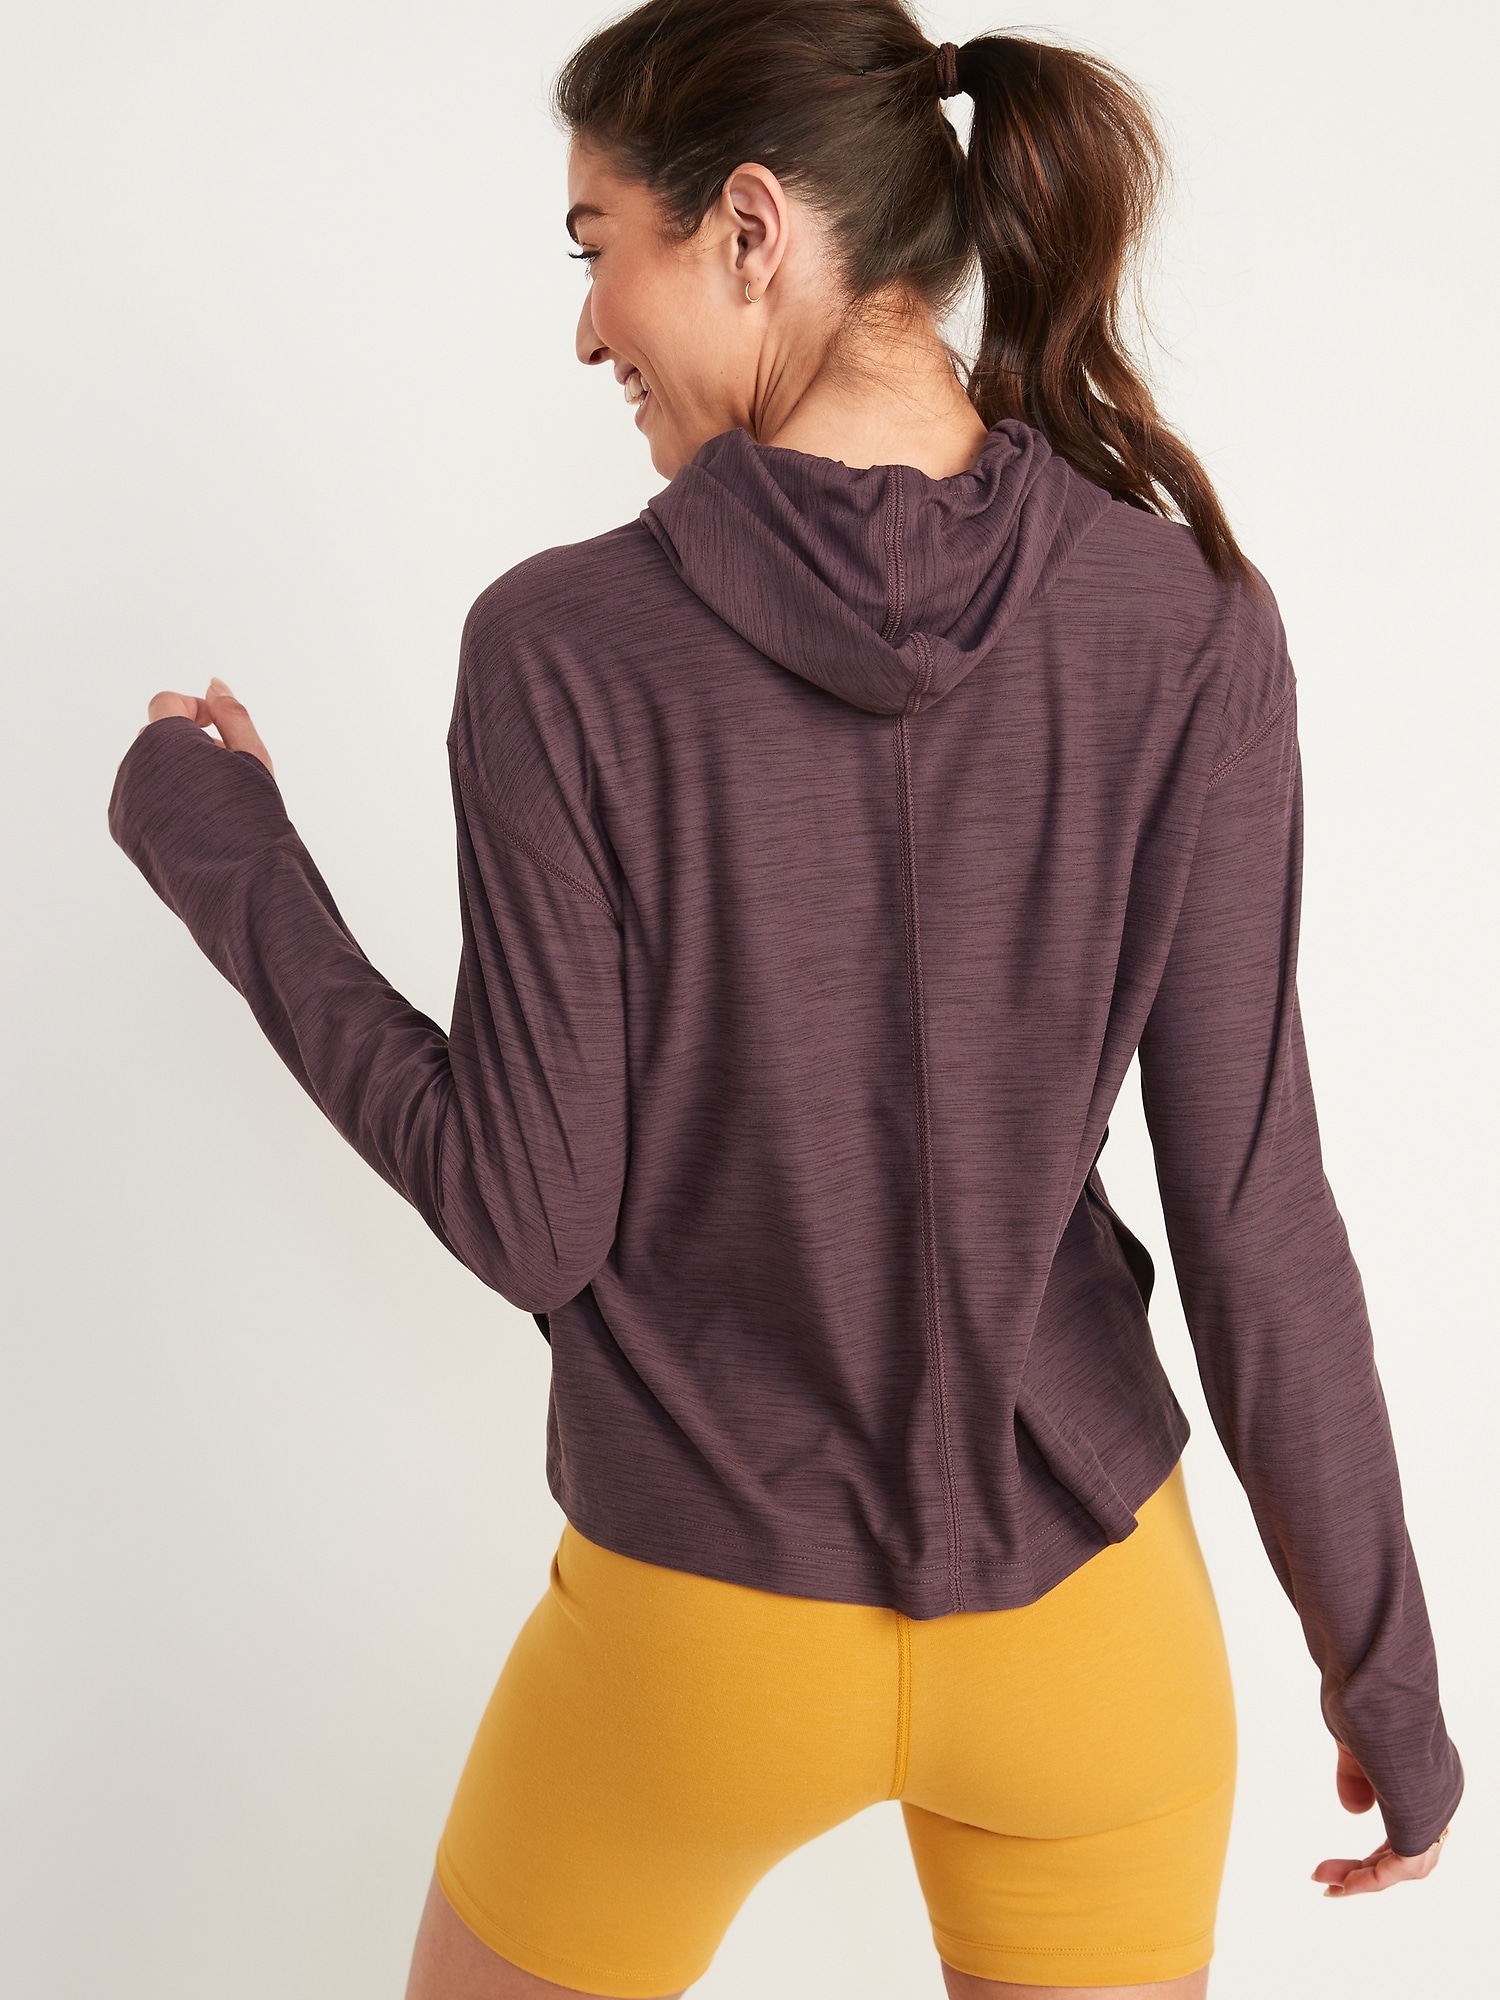 Lululemon Women's Sweatshirt - Yellow - XL